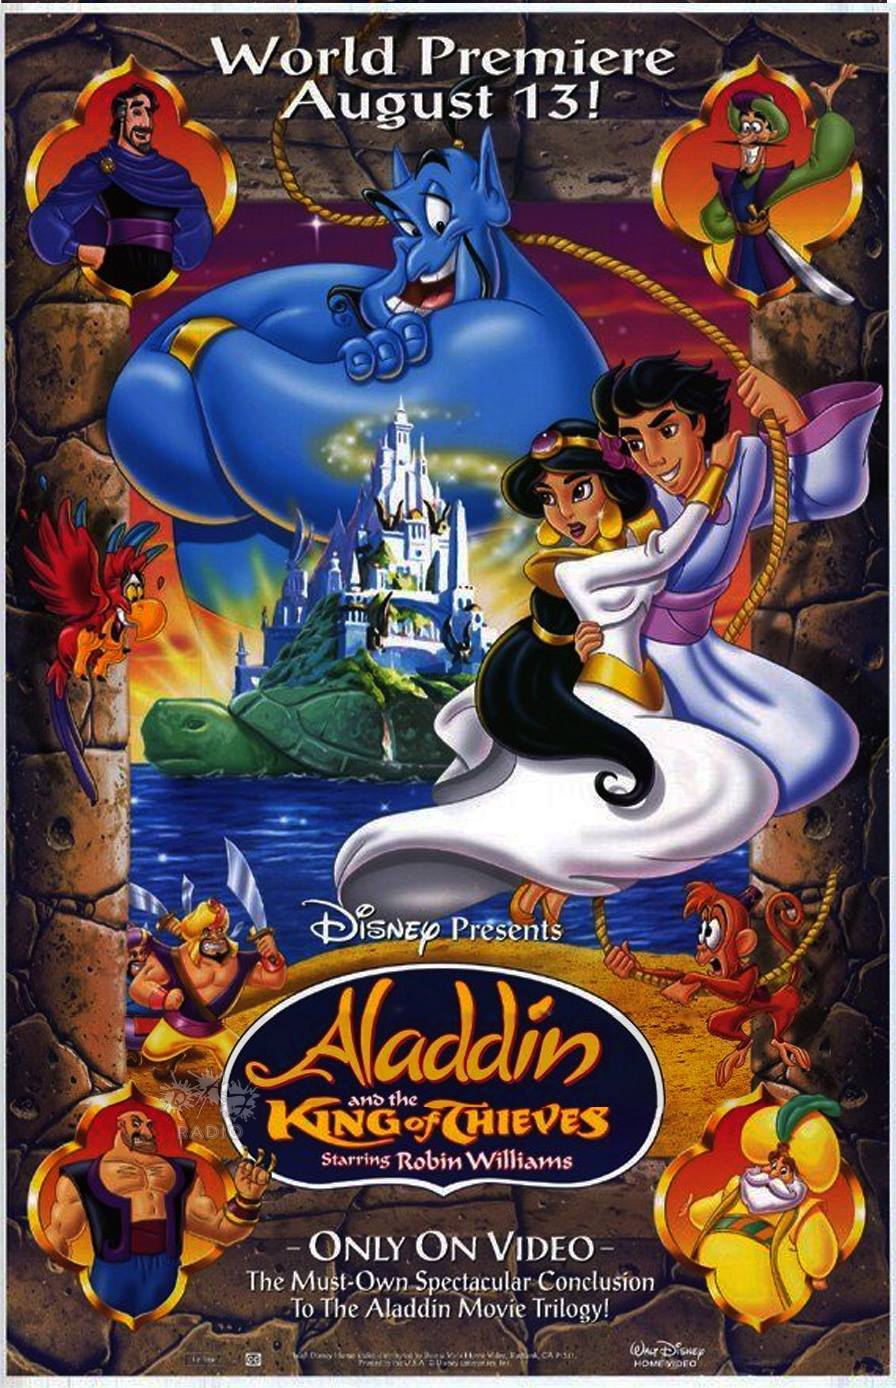 Aladin a král zlodějů - plakát pro VHS vydání